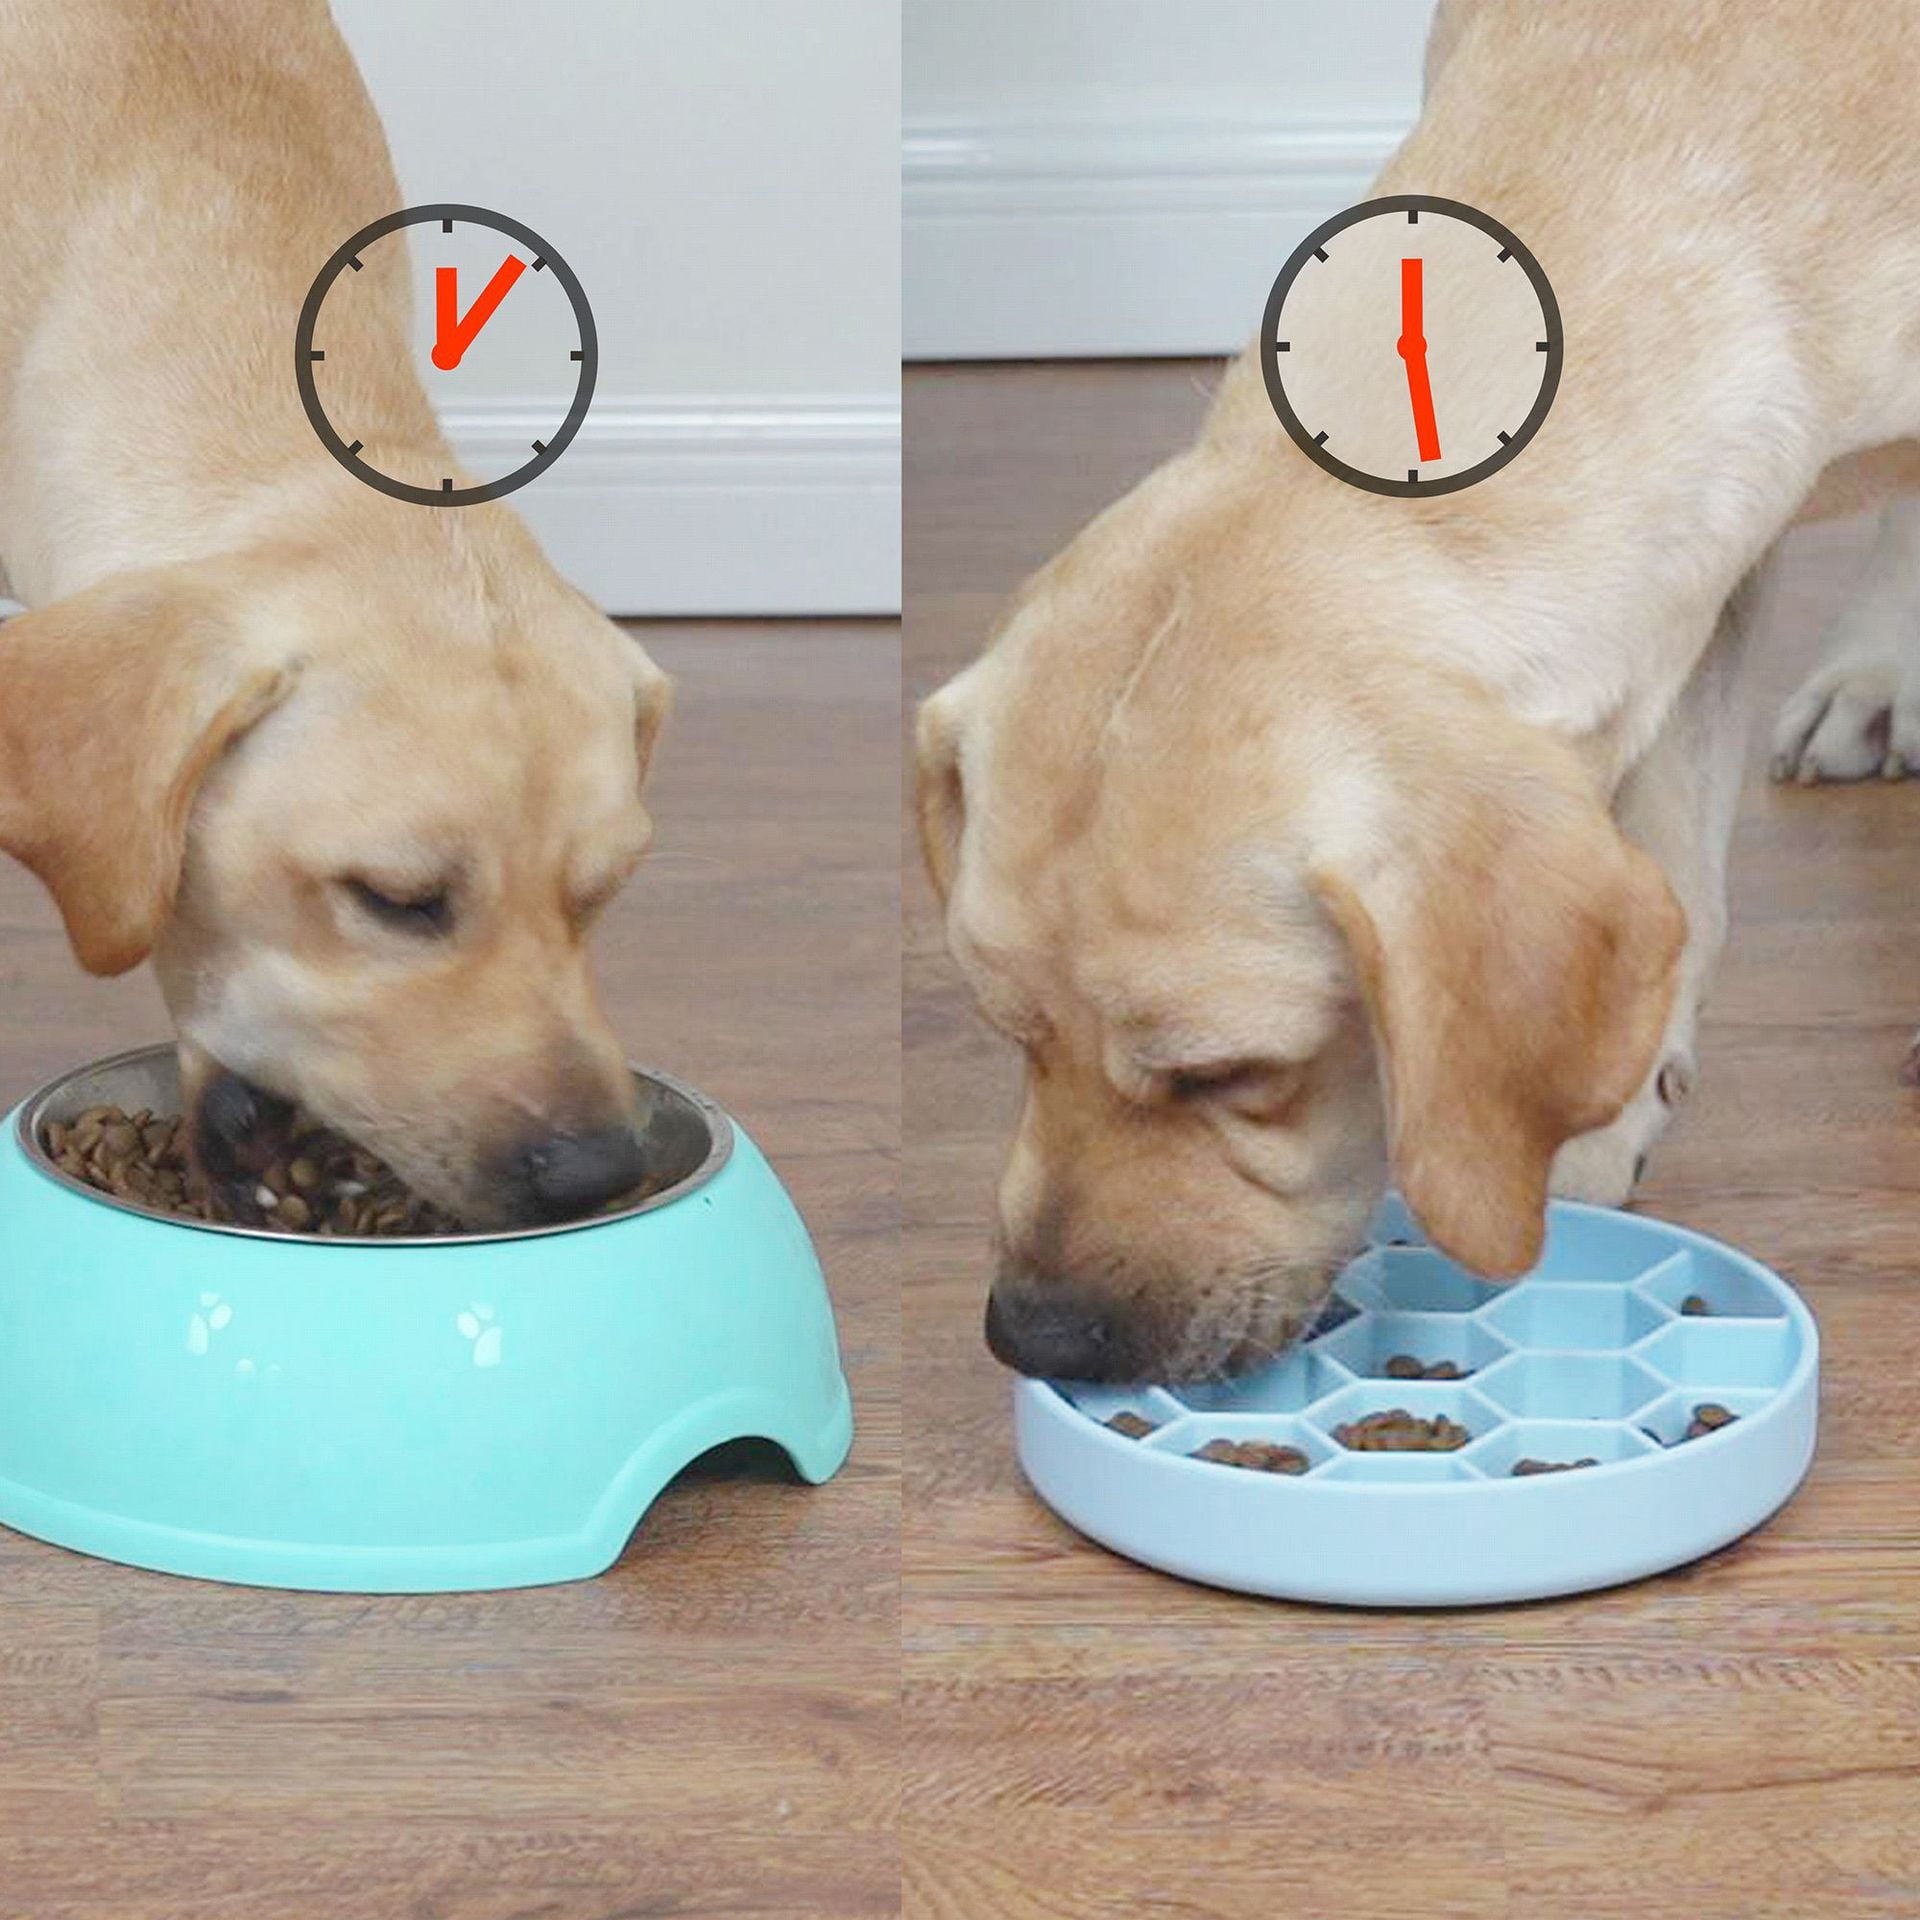 1PC Pet Dog Bowl Slow Feeder Food Grade Silicon Anti Choking Puppy  Anti-Gulping